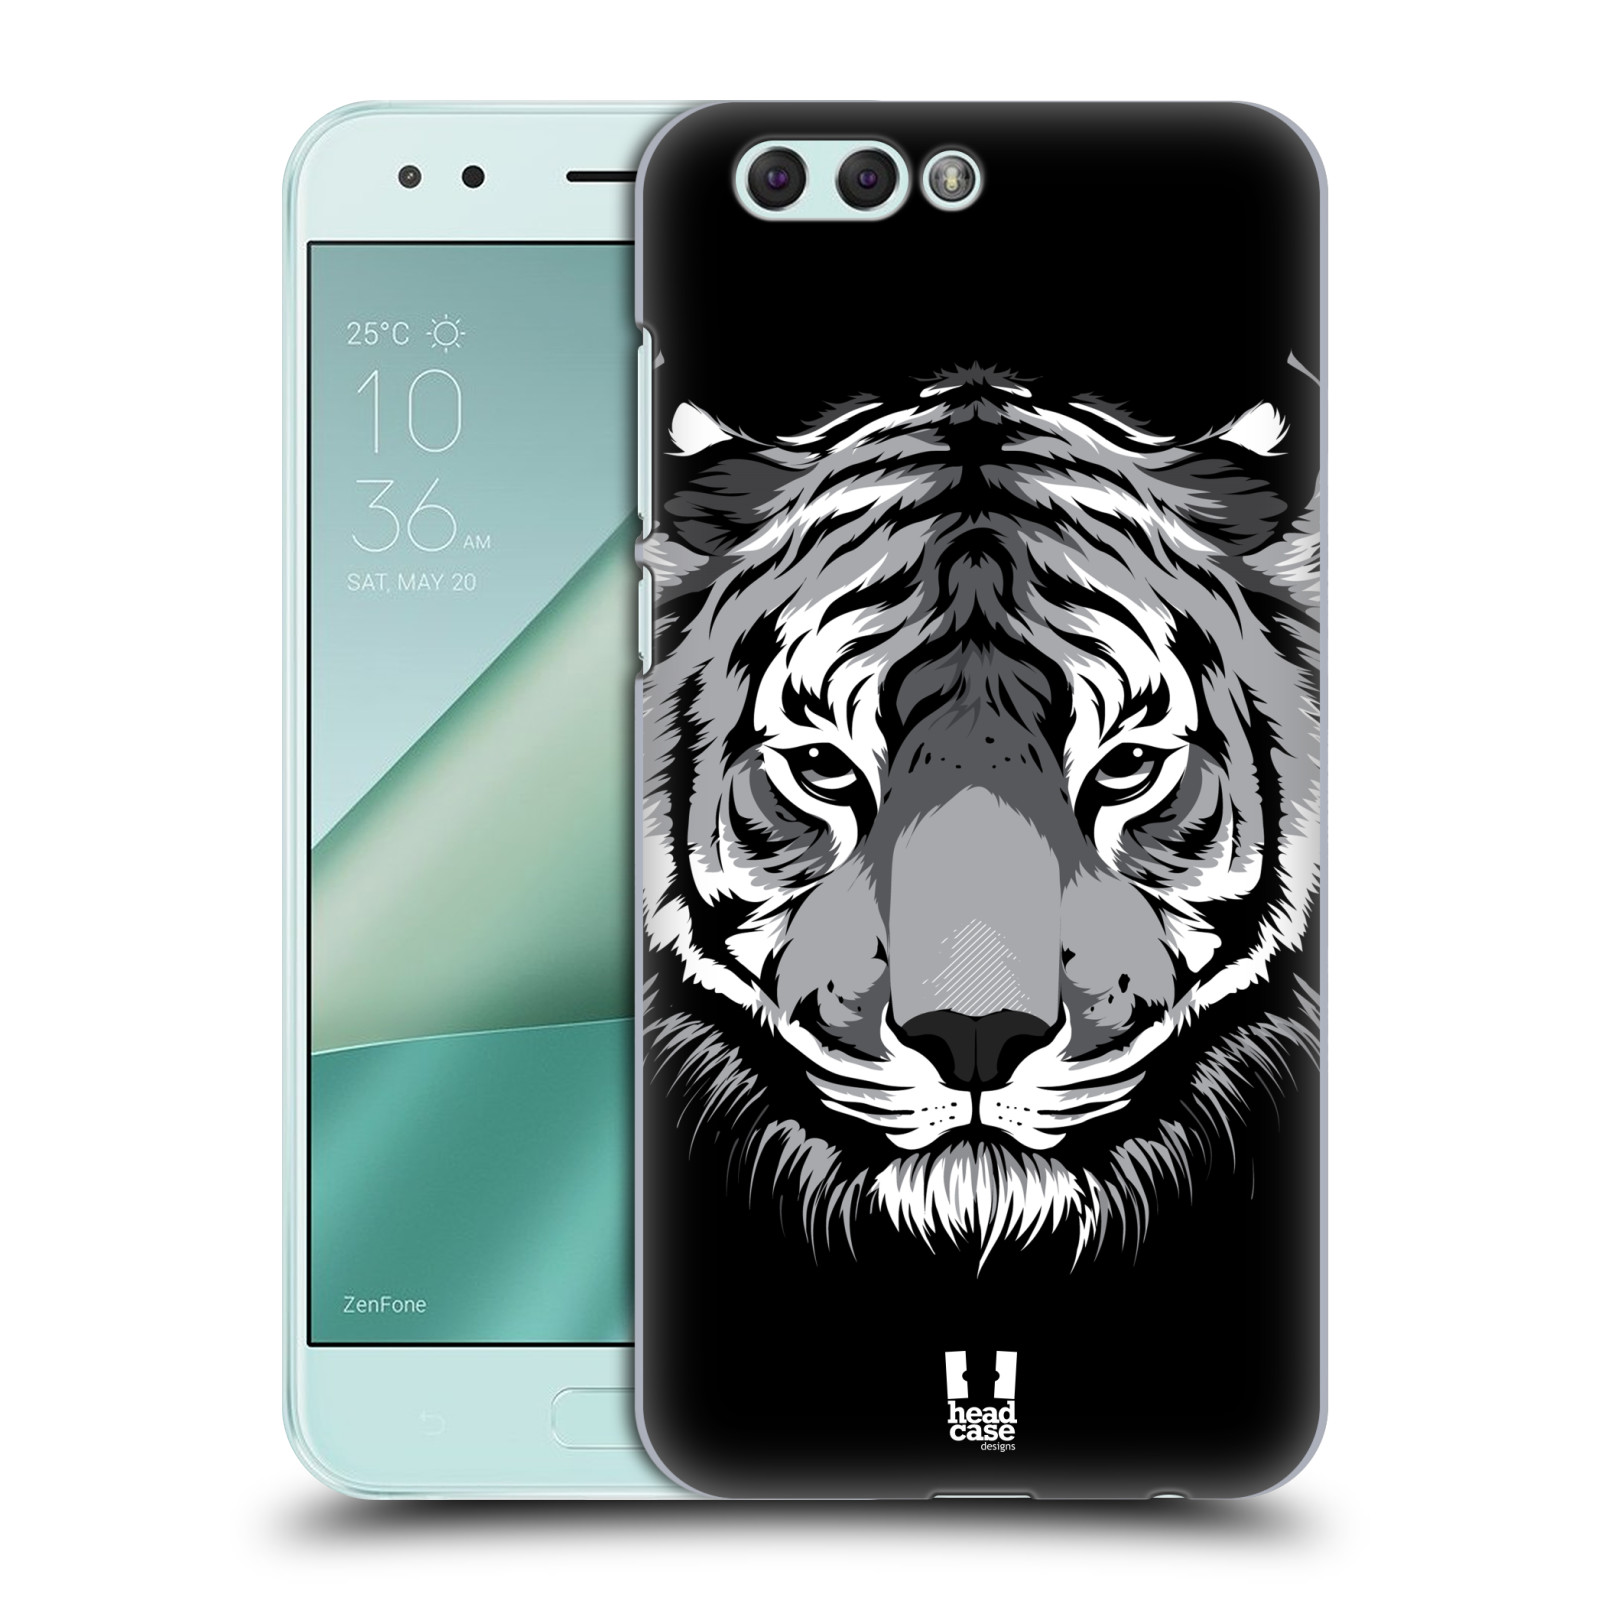 HEAD CASE plastový obal na mobil Asus Zenfone 4 ZE554KL vzor Zvíře kreslená tvář 2 tygr